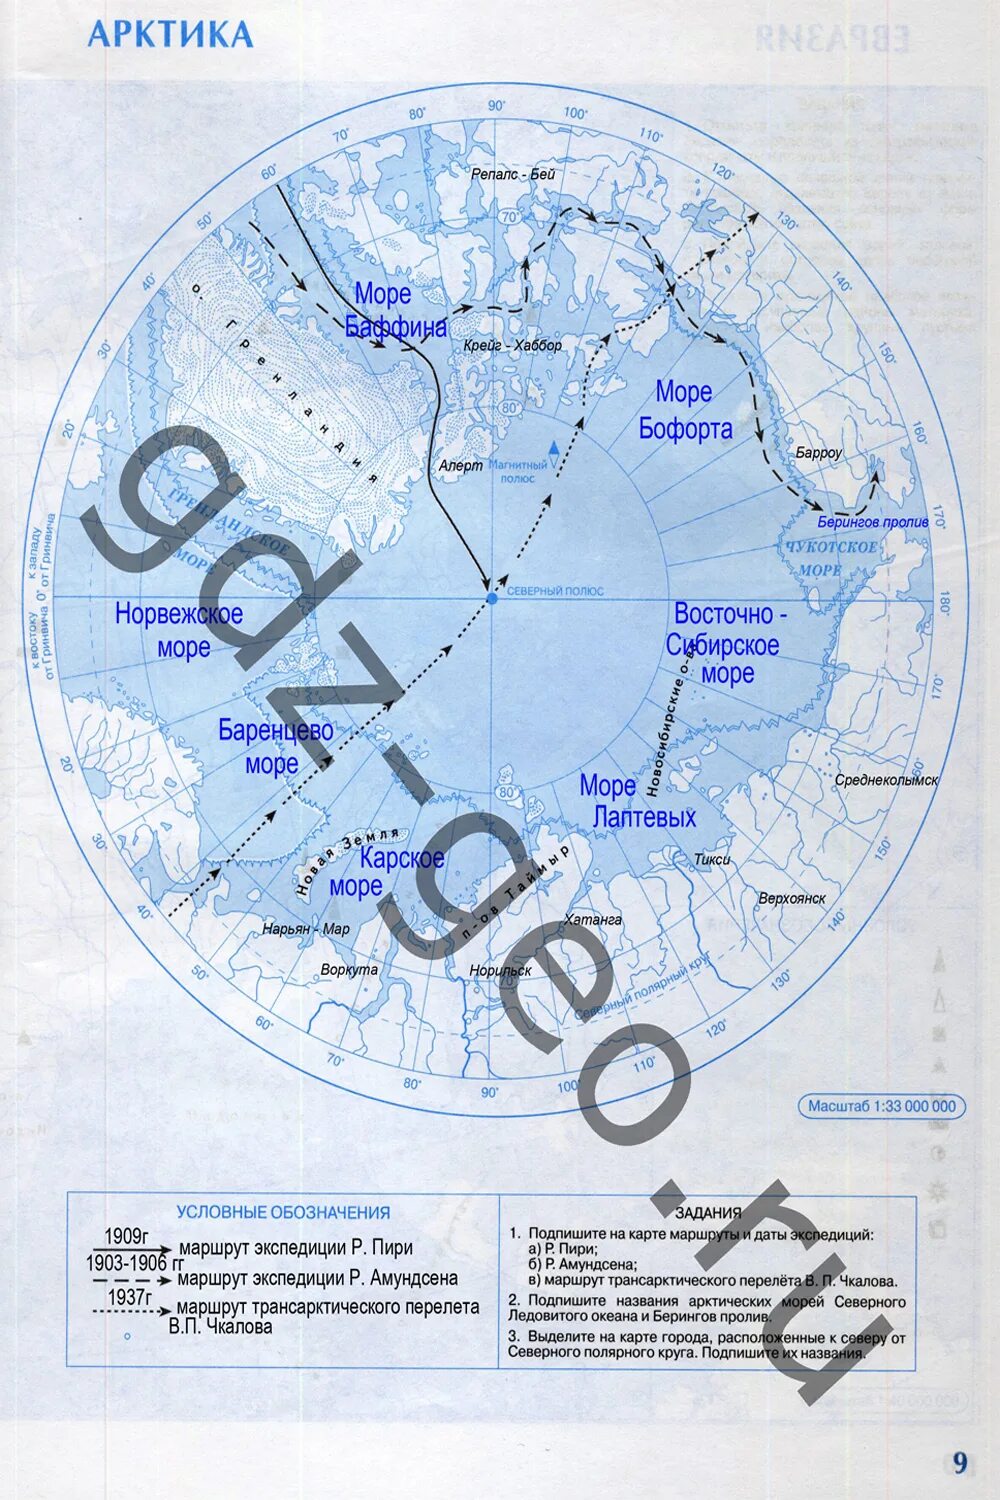 Контурная карта по географии 7 класс дрофа. Контурная карта география 7 класс Арктика. Гдз география 7 класс контурные карты Арктика. Гдз контурные карты по географии 7 класс Арктика. Контурная карта Арктики.